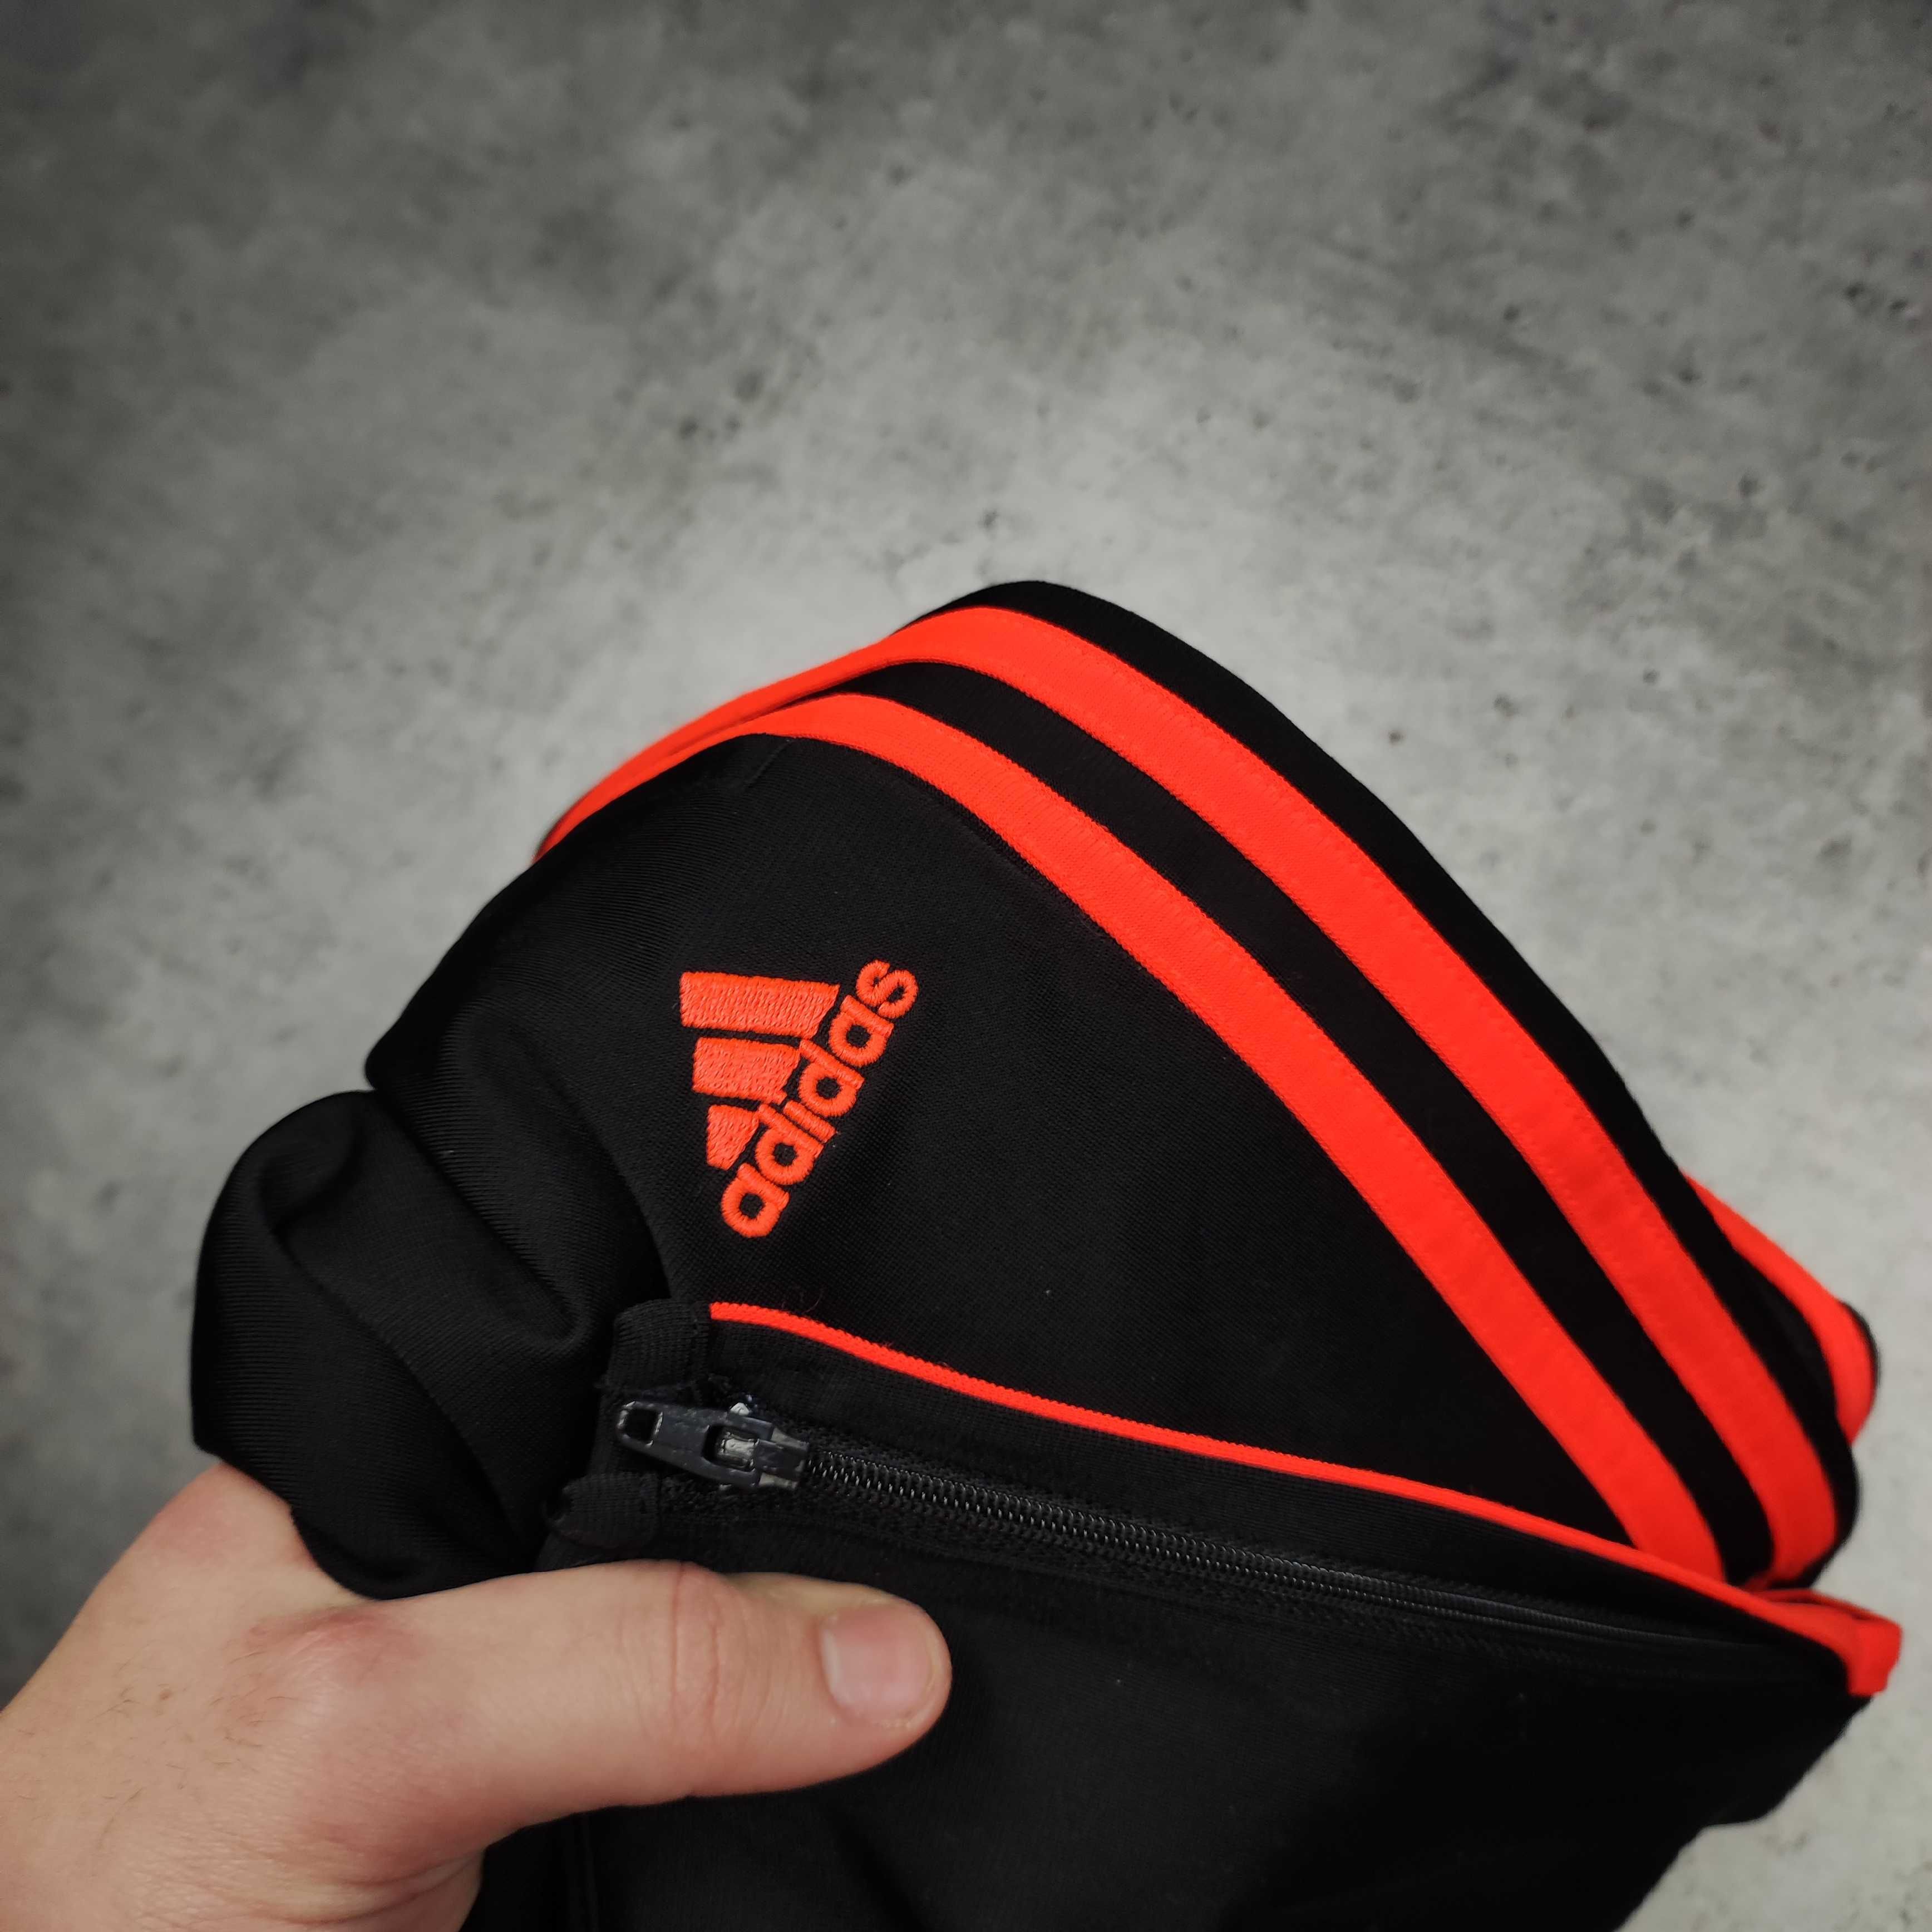 MĘSKIE Dresy Sportowe Joggery Adidas Czarne Pomarańcz Logo Dresowe